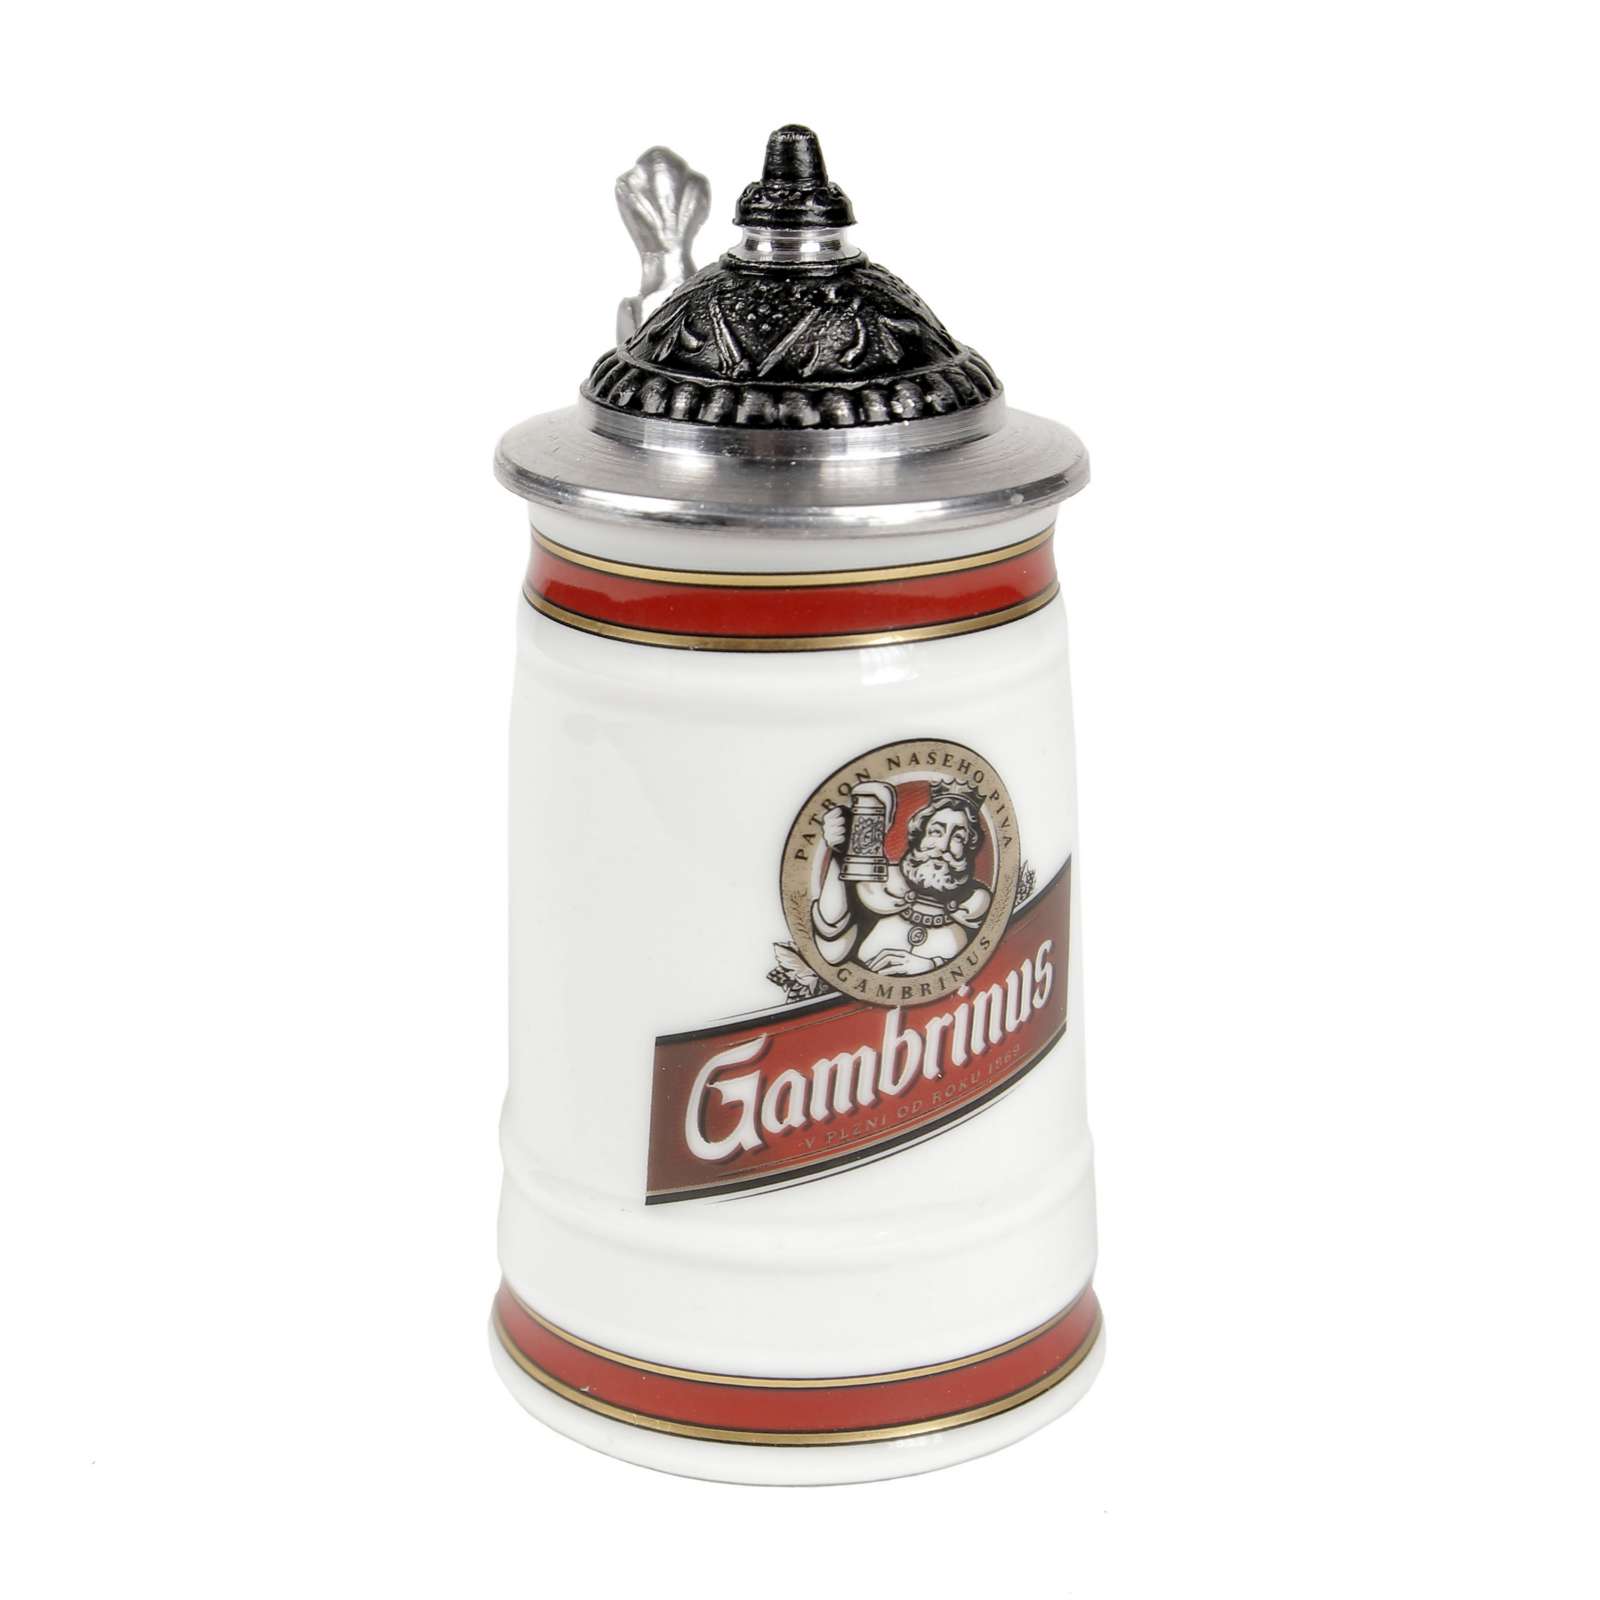 Gambrinus mini tankard with a lid